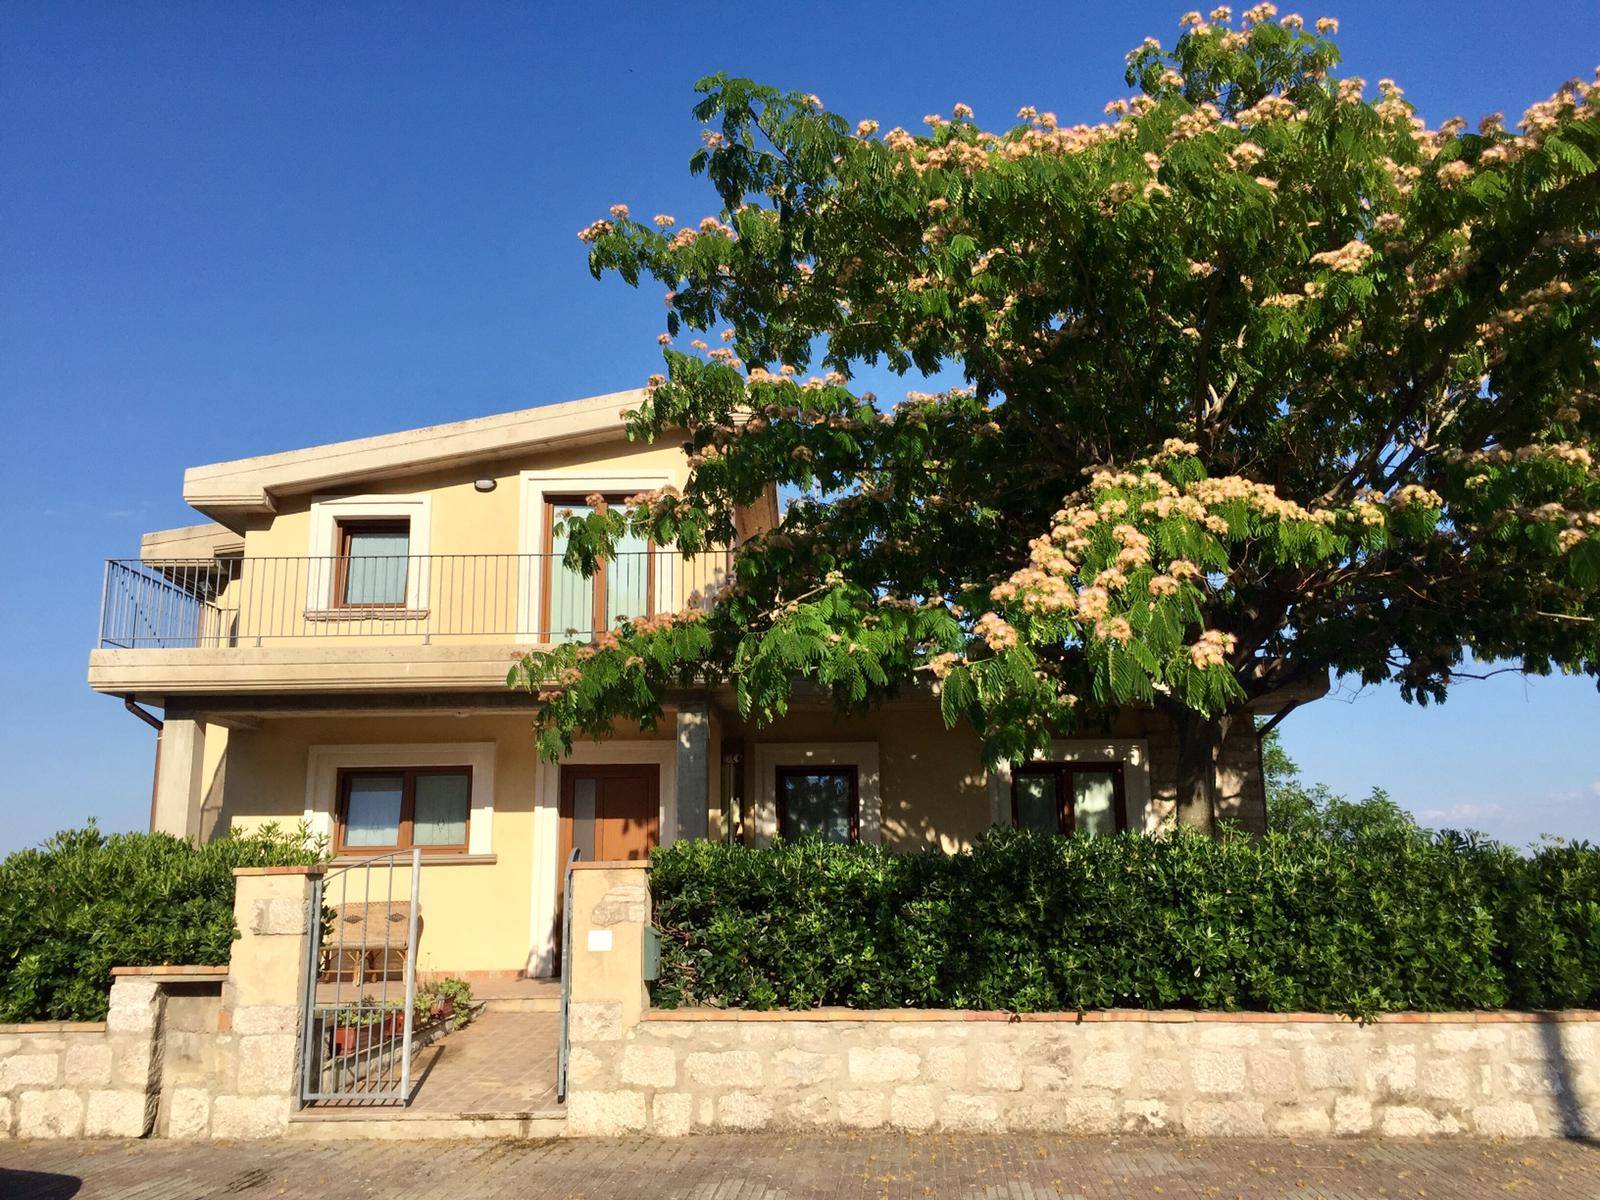 Villa in vendita a Dogliola, 5 locali, prezzo € 220.000 | PortaleAgenzieImmobiliari.it